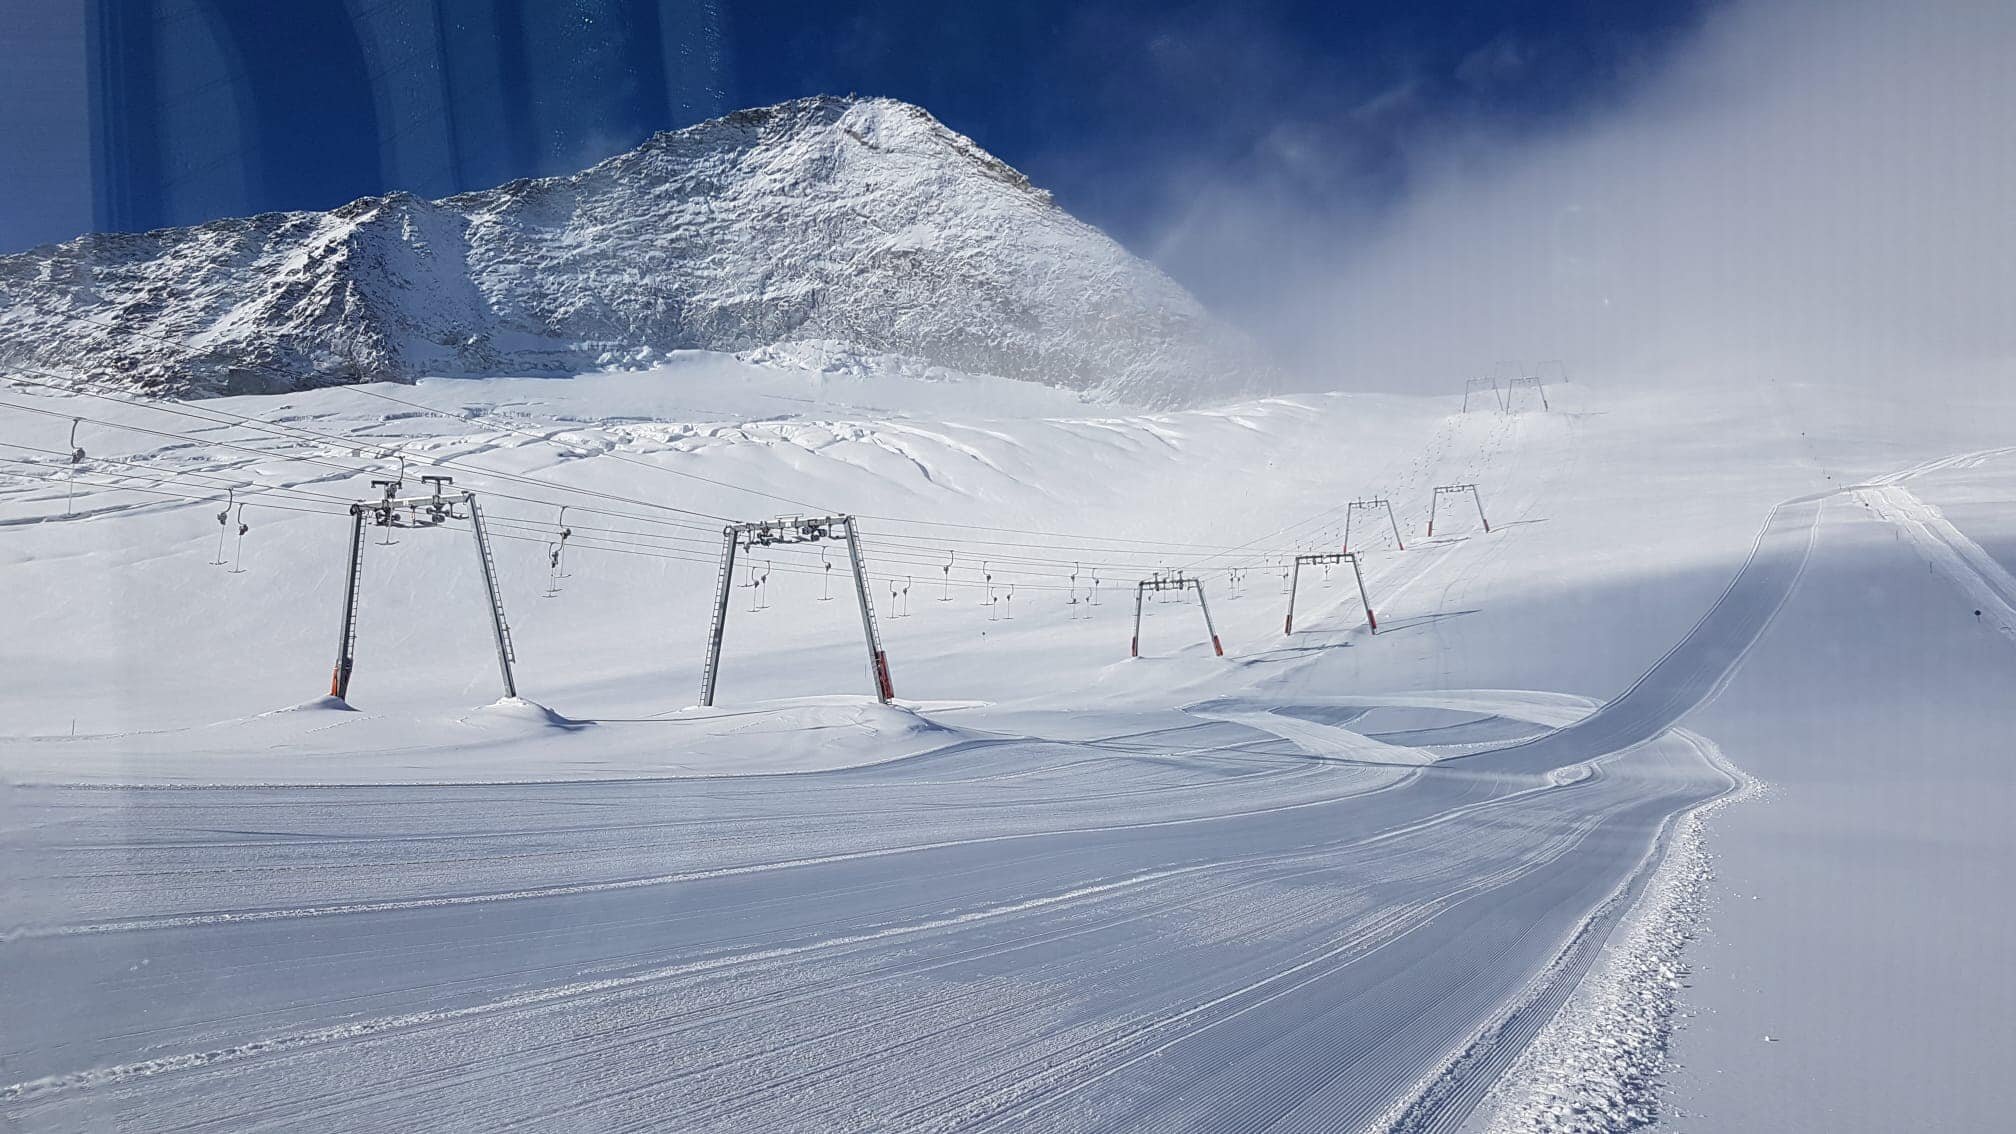 Hintertux-gleccser (Ausztria) ma reggel, már 18 km pálya síelhető